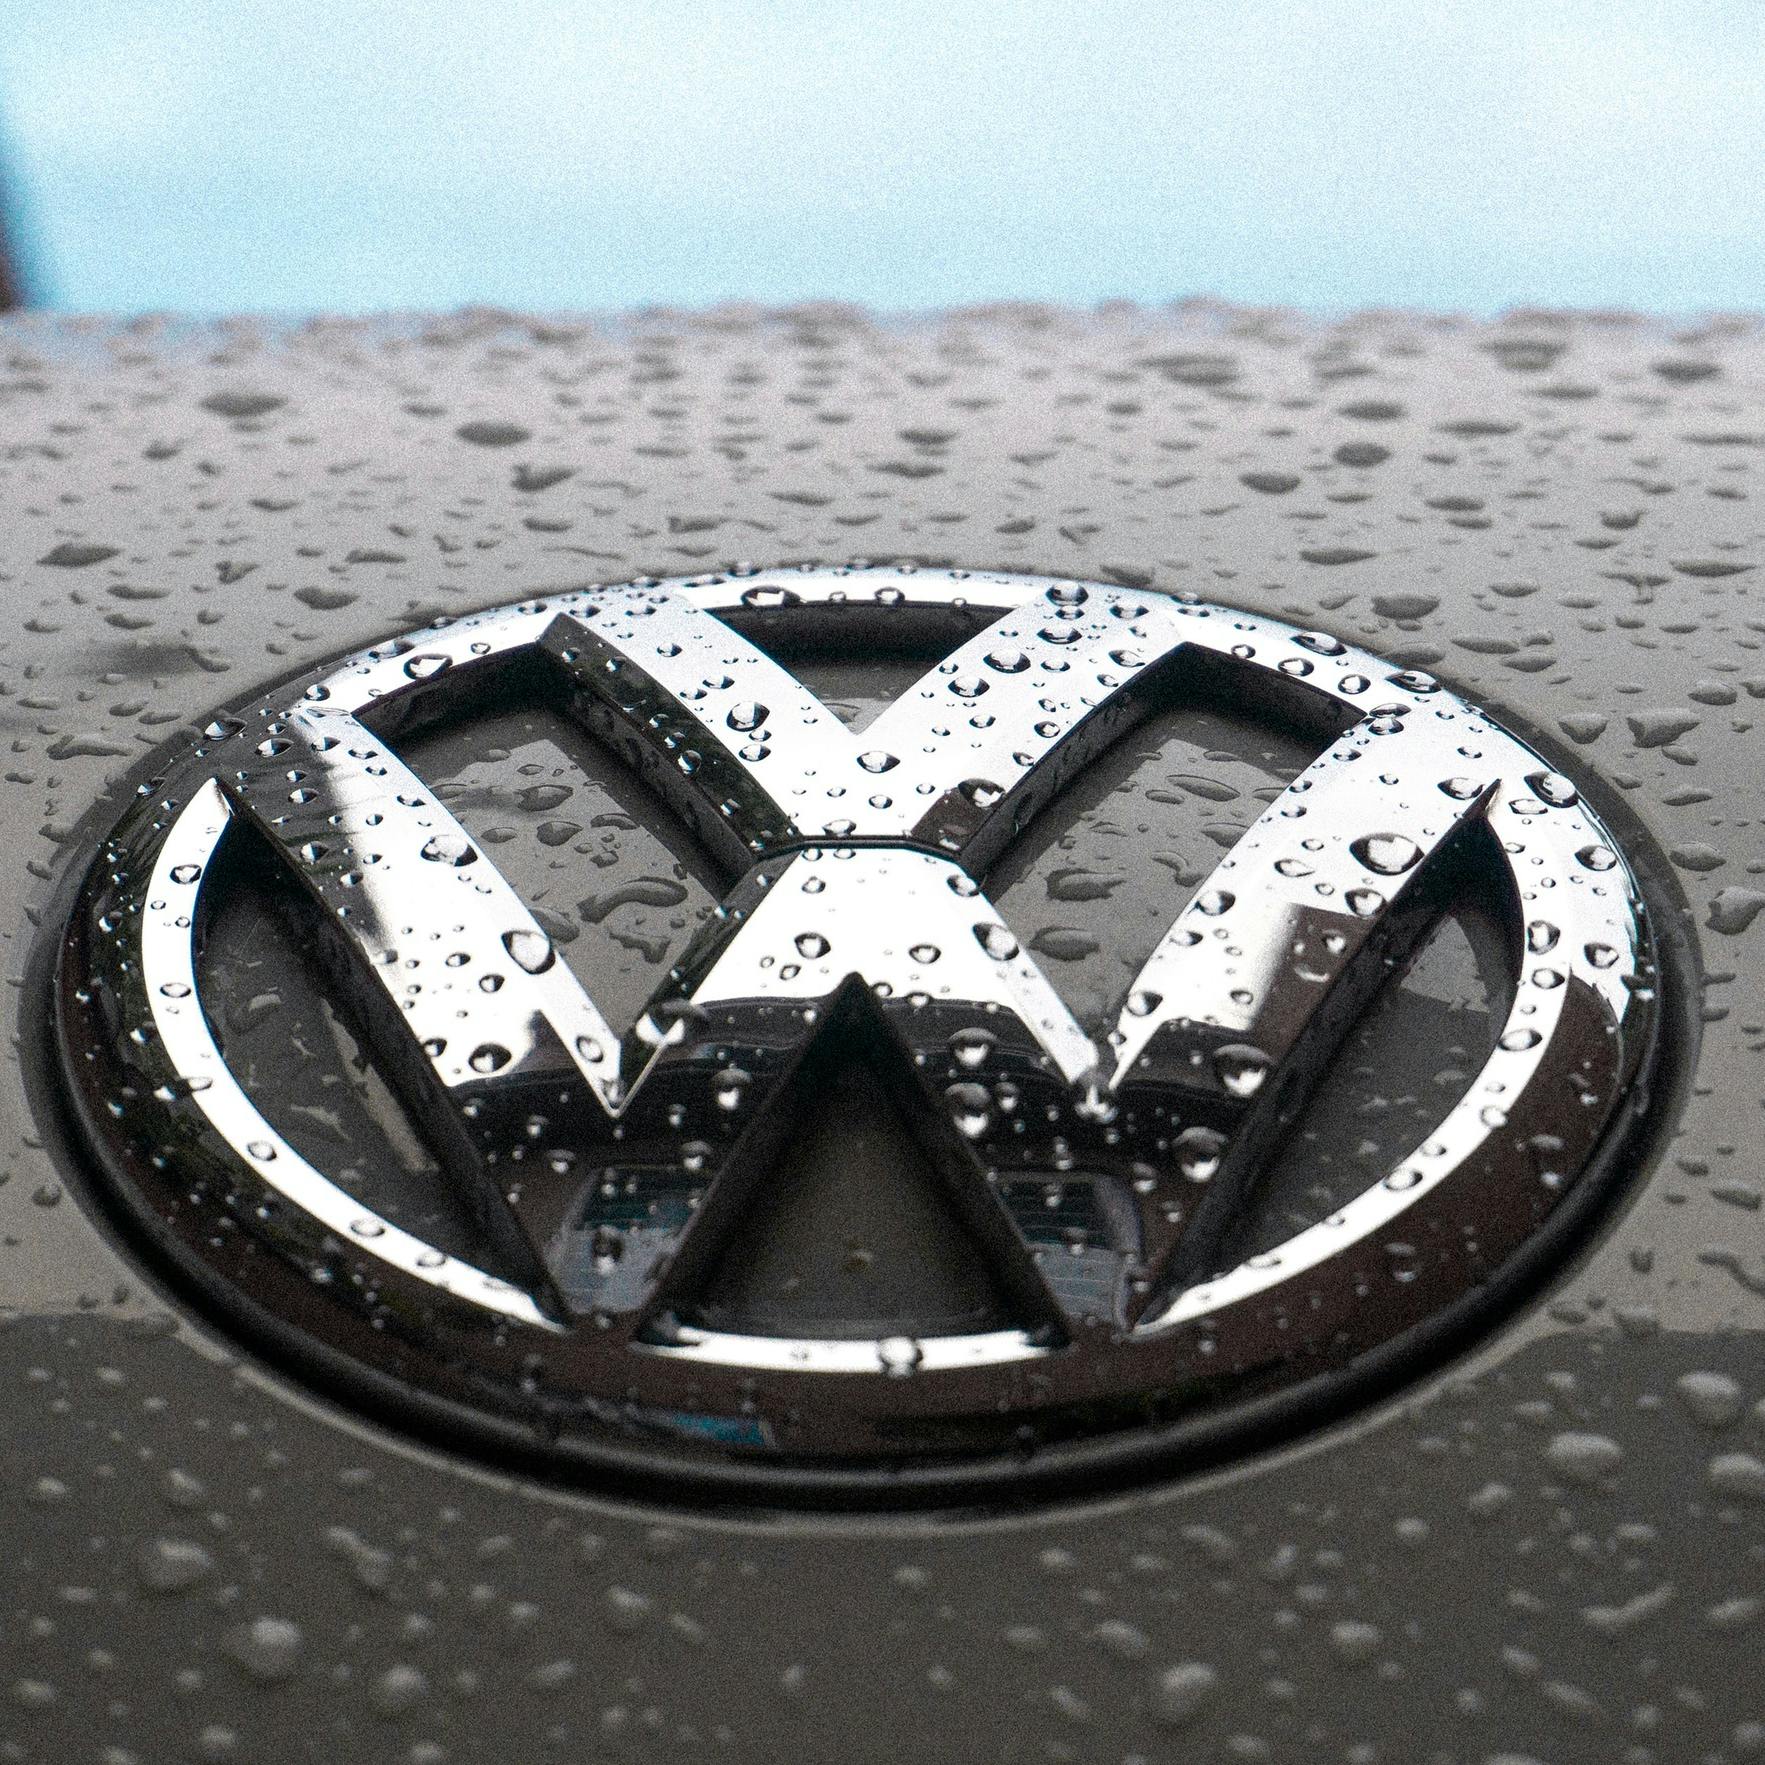 Consumentenbond sleept Volkswagen weer voor rechter om diesels